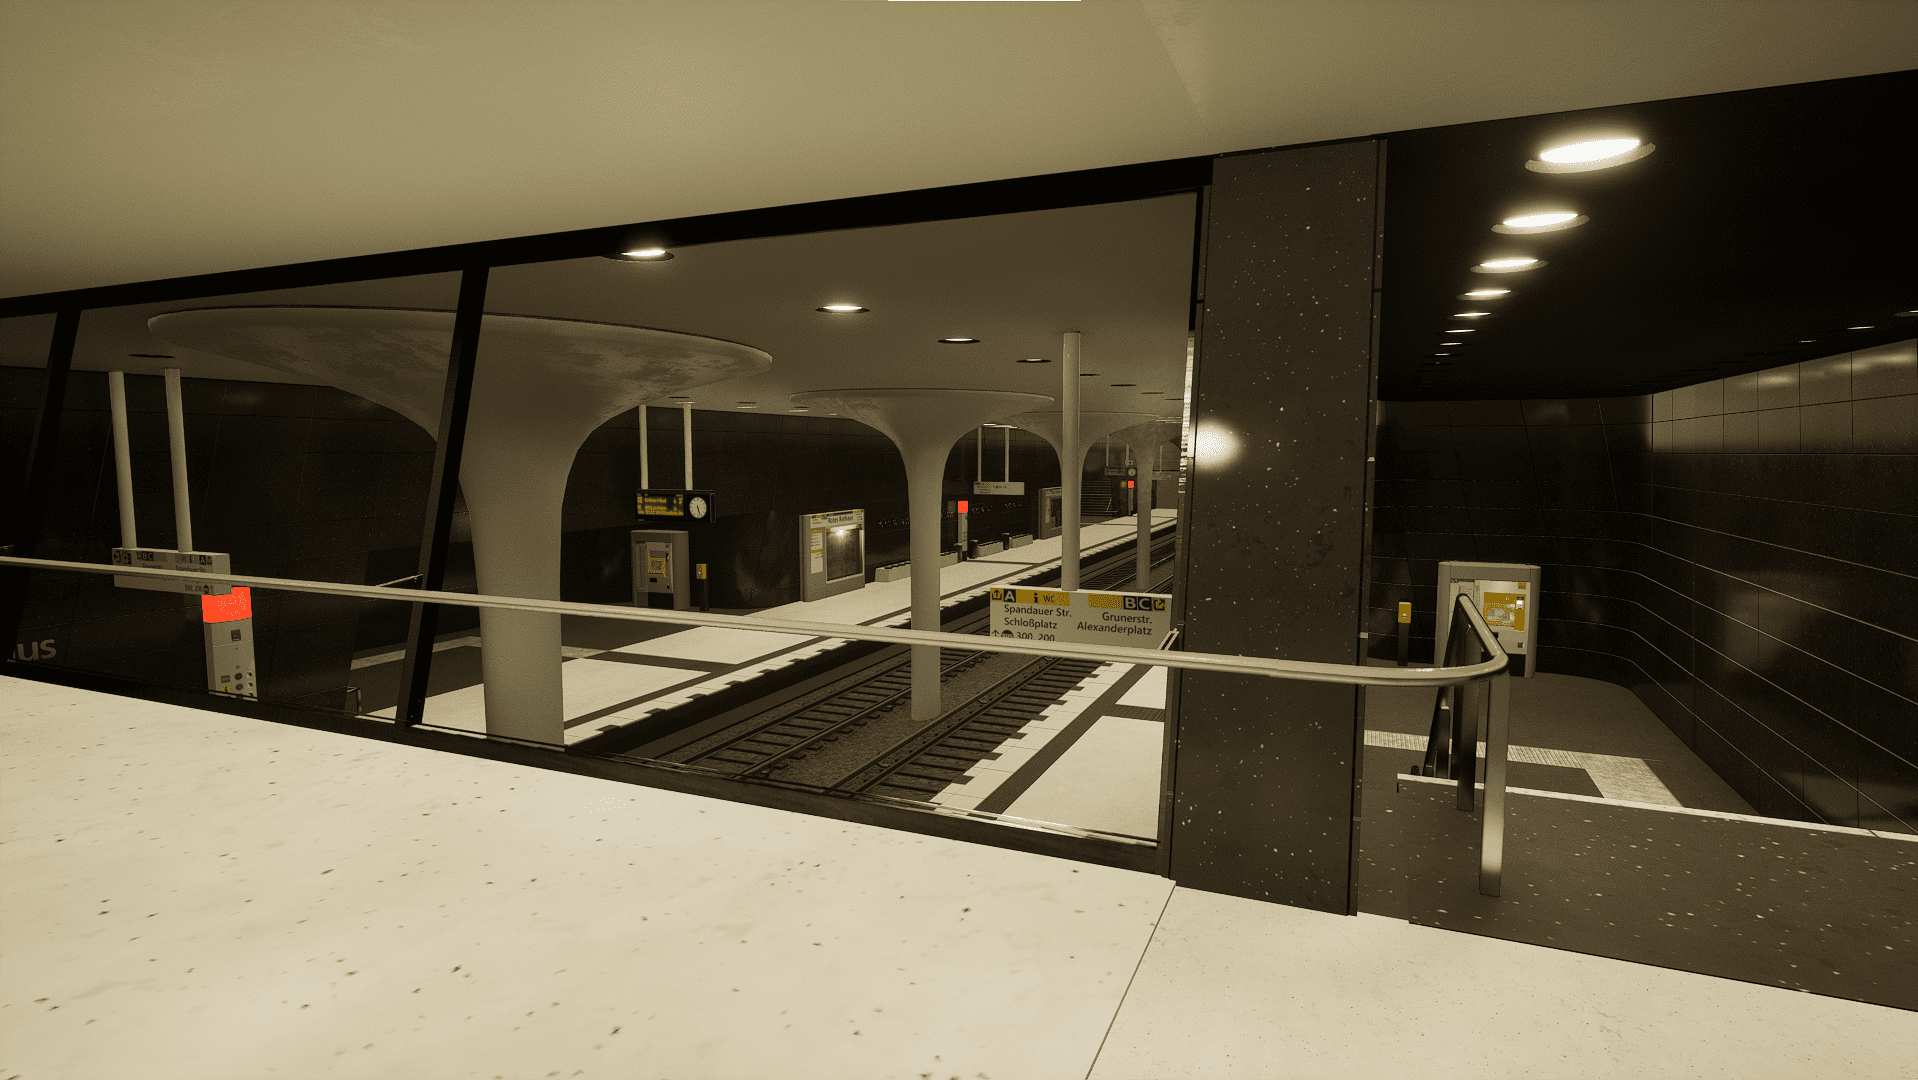 "Rotes Rathaus" - Subway Station